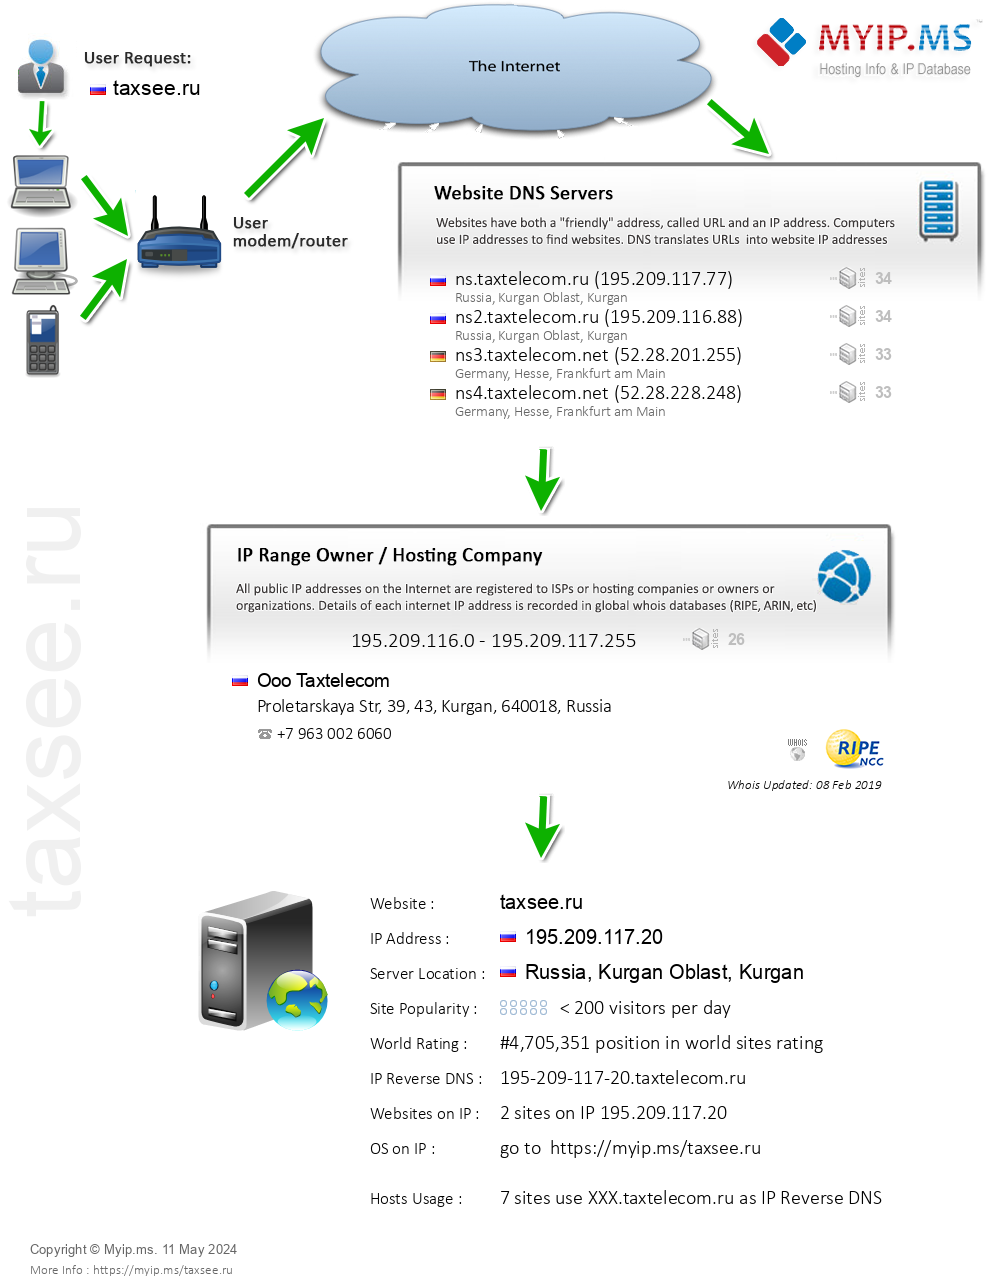 Taxsee.ru - Website Hosting Visual IP Diagram